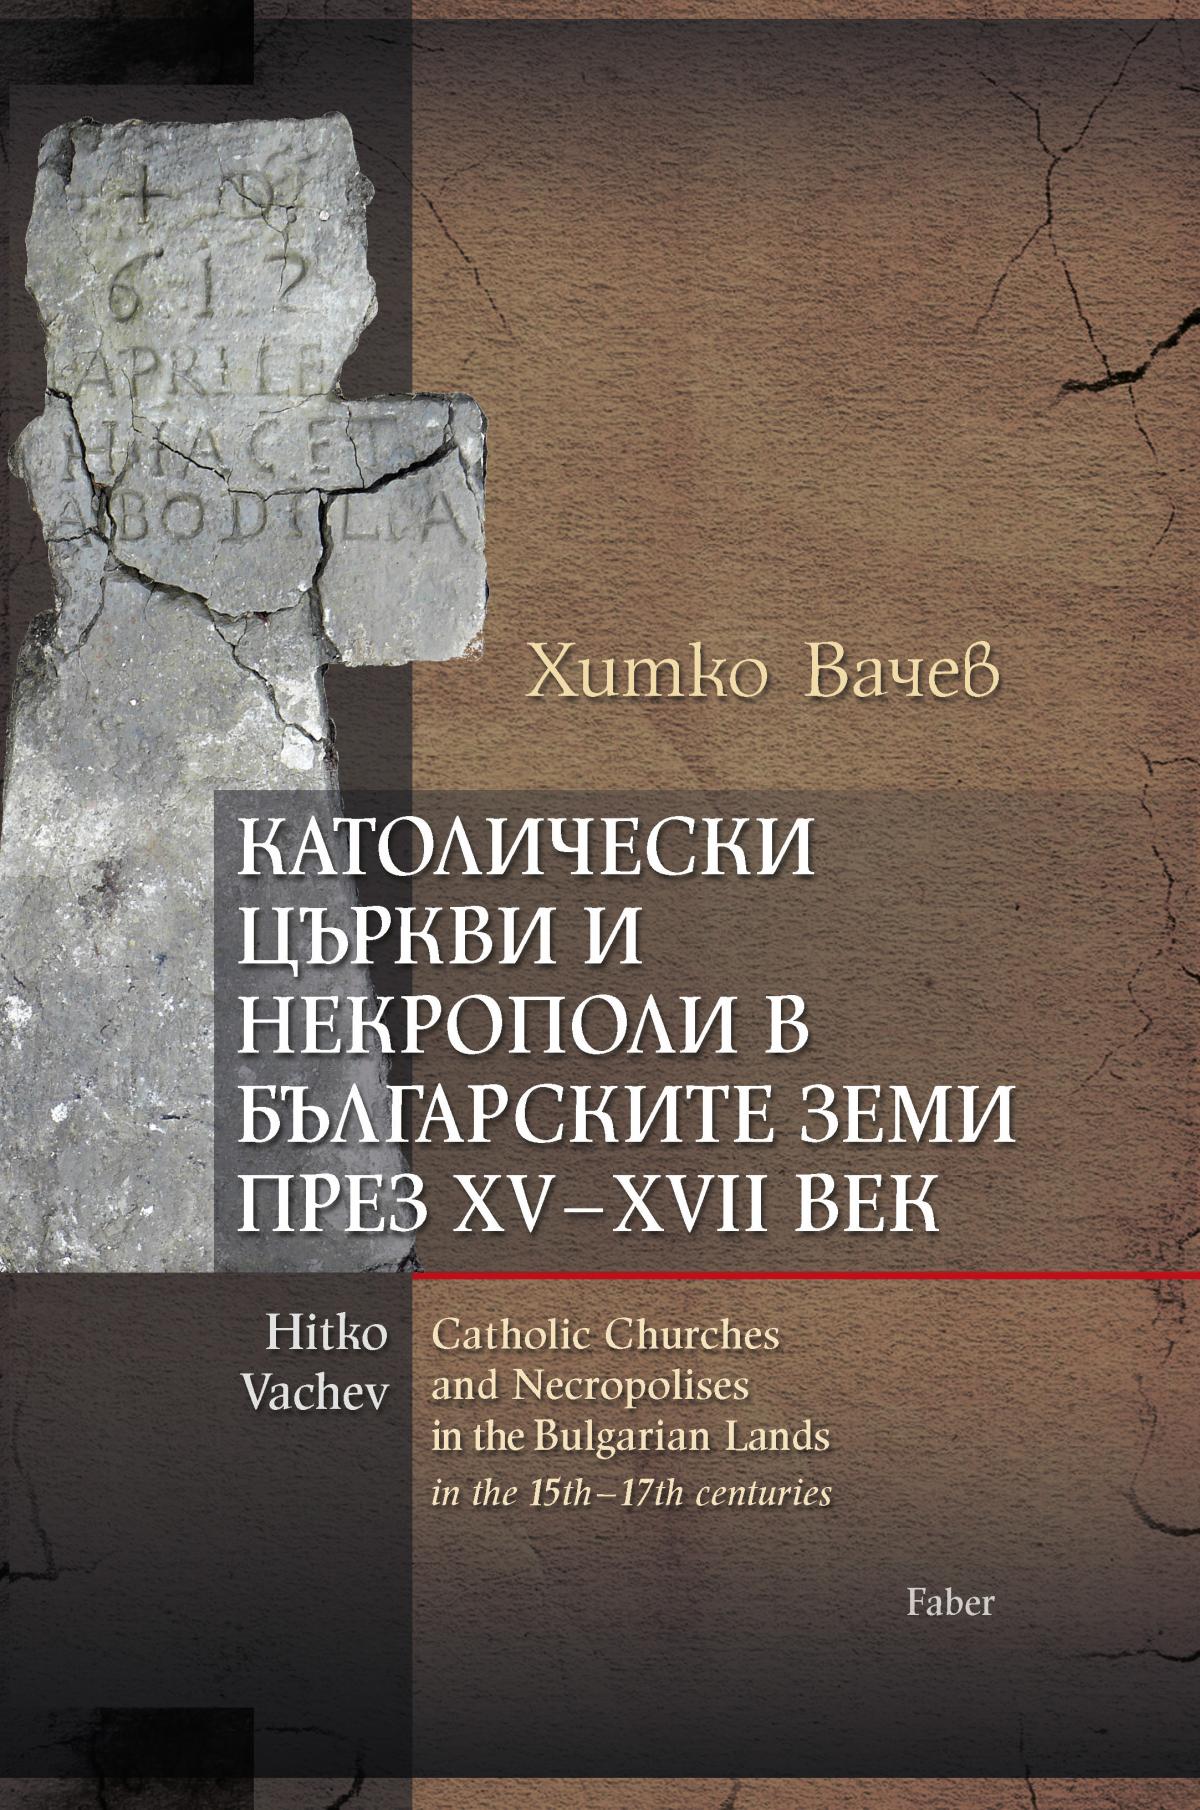 Католически църкви и некрополи в българските земи през XV–XVII век